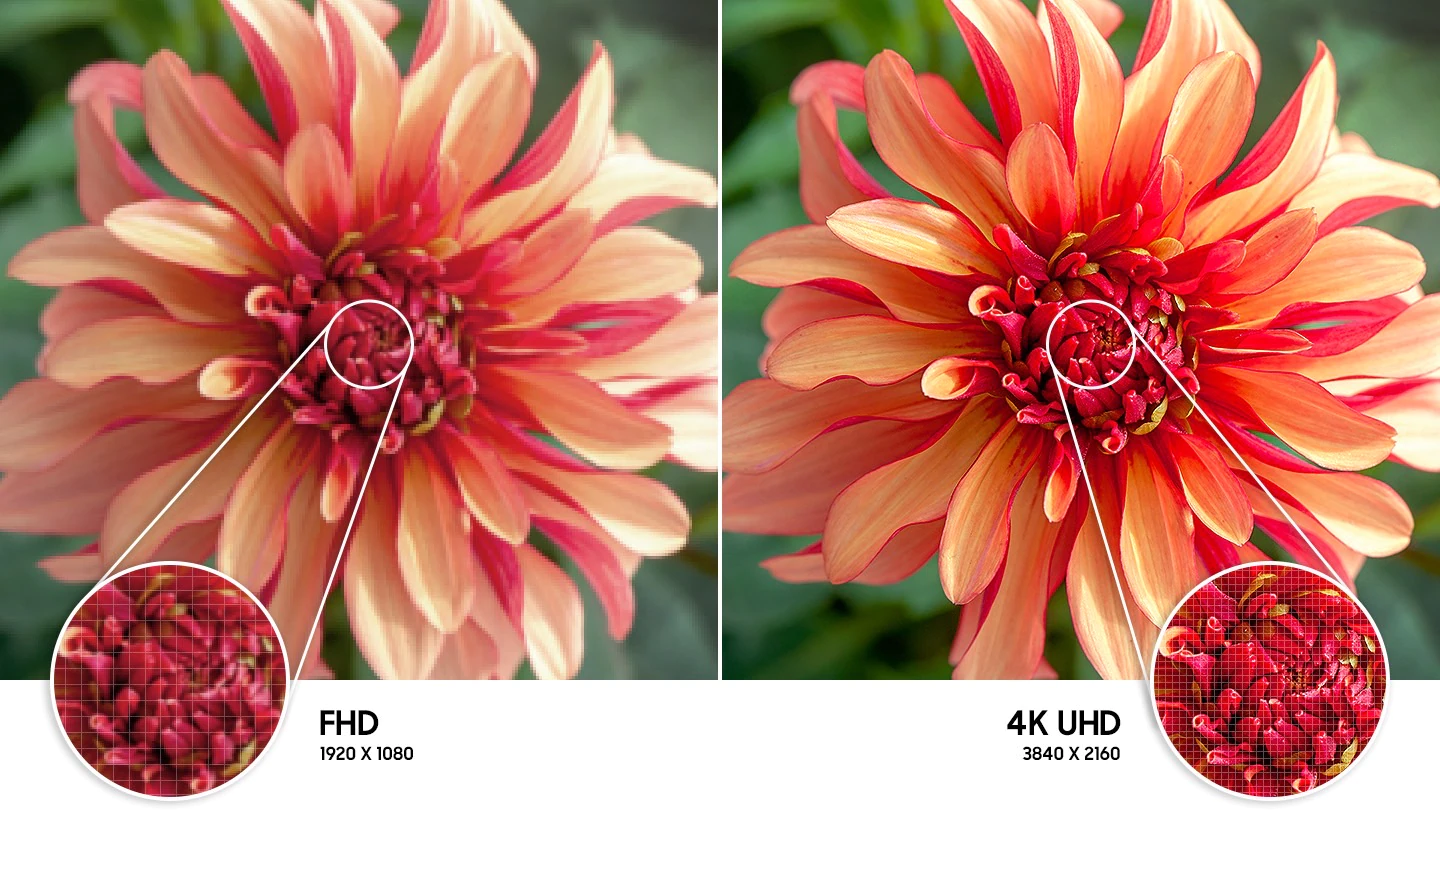 Chytrý televízor Samsung UE50AU7072 sa pýši VA panelom s uhlopriečkou 49,5”, ktorý ponúka obraz v 4K UHD kvalite so 4násobným počtom pixelov.